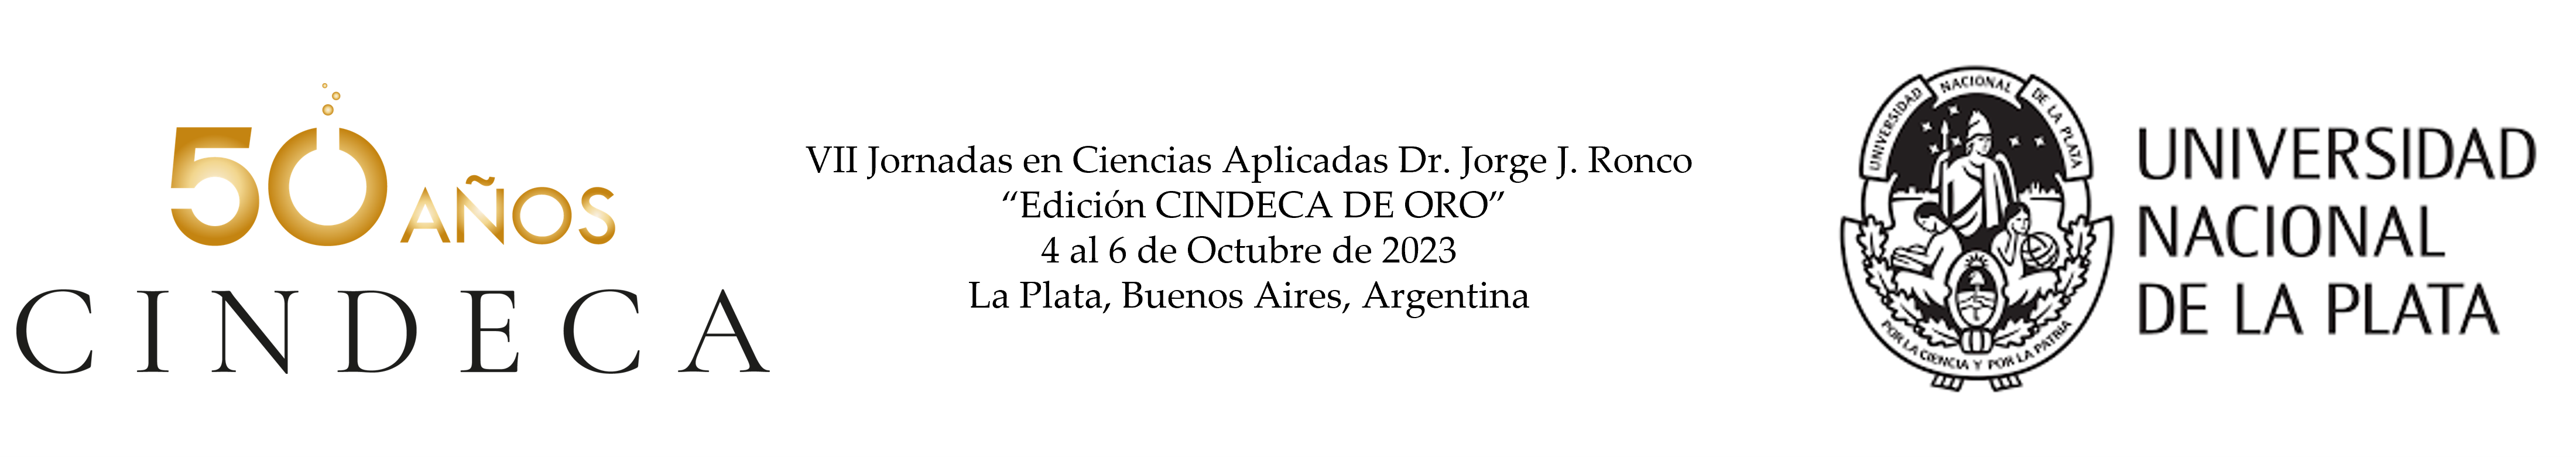 VII Jornadas en Ciencias Aplicadas Dr. Jorge J. Ronco. Edición CINDECA de ORO Logo